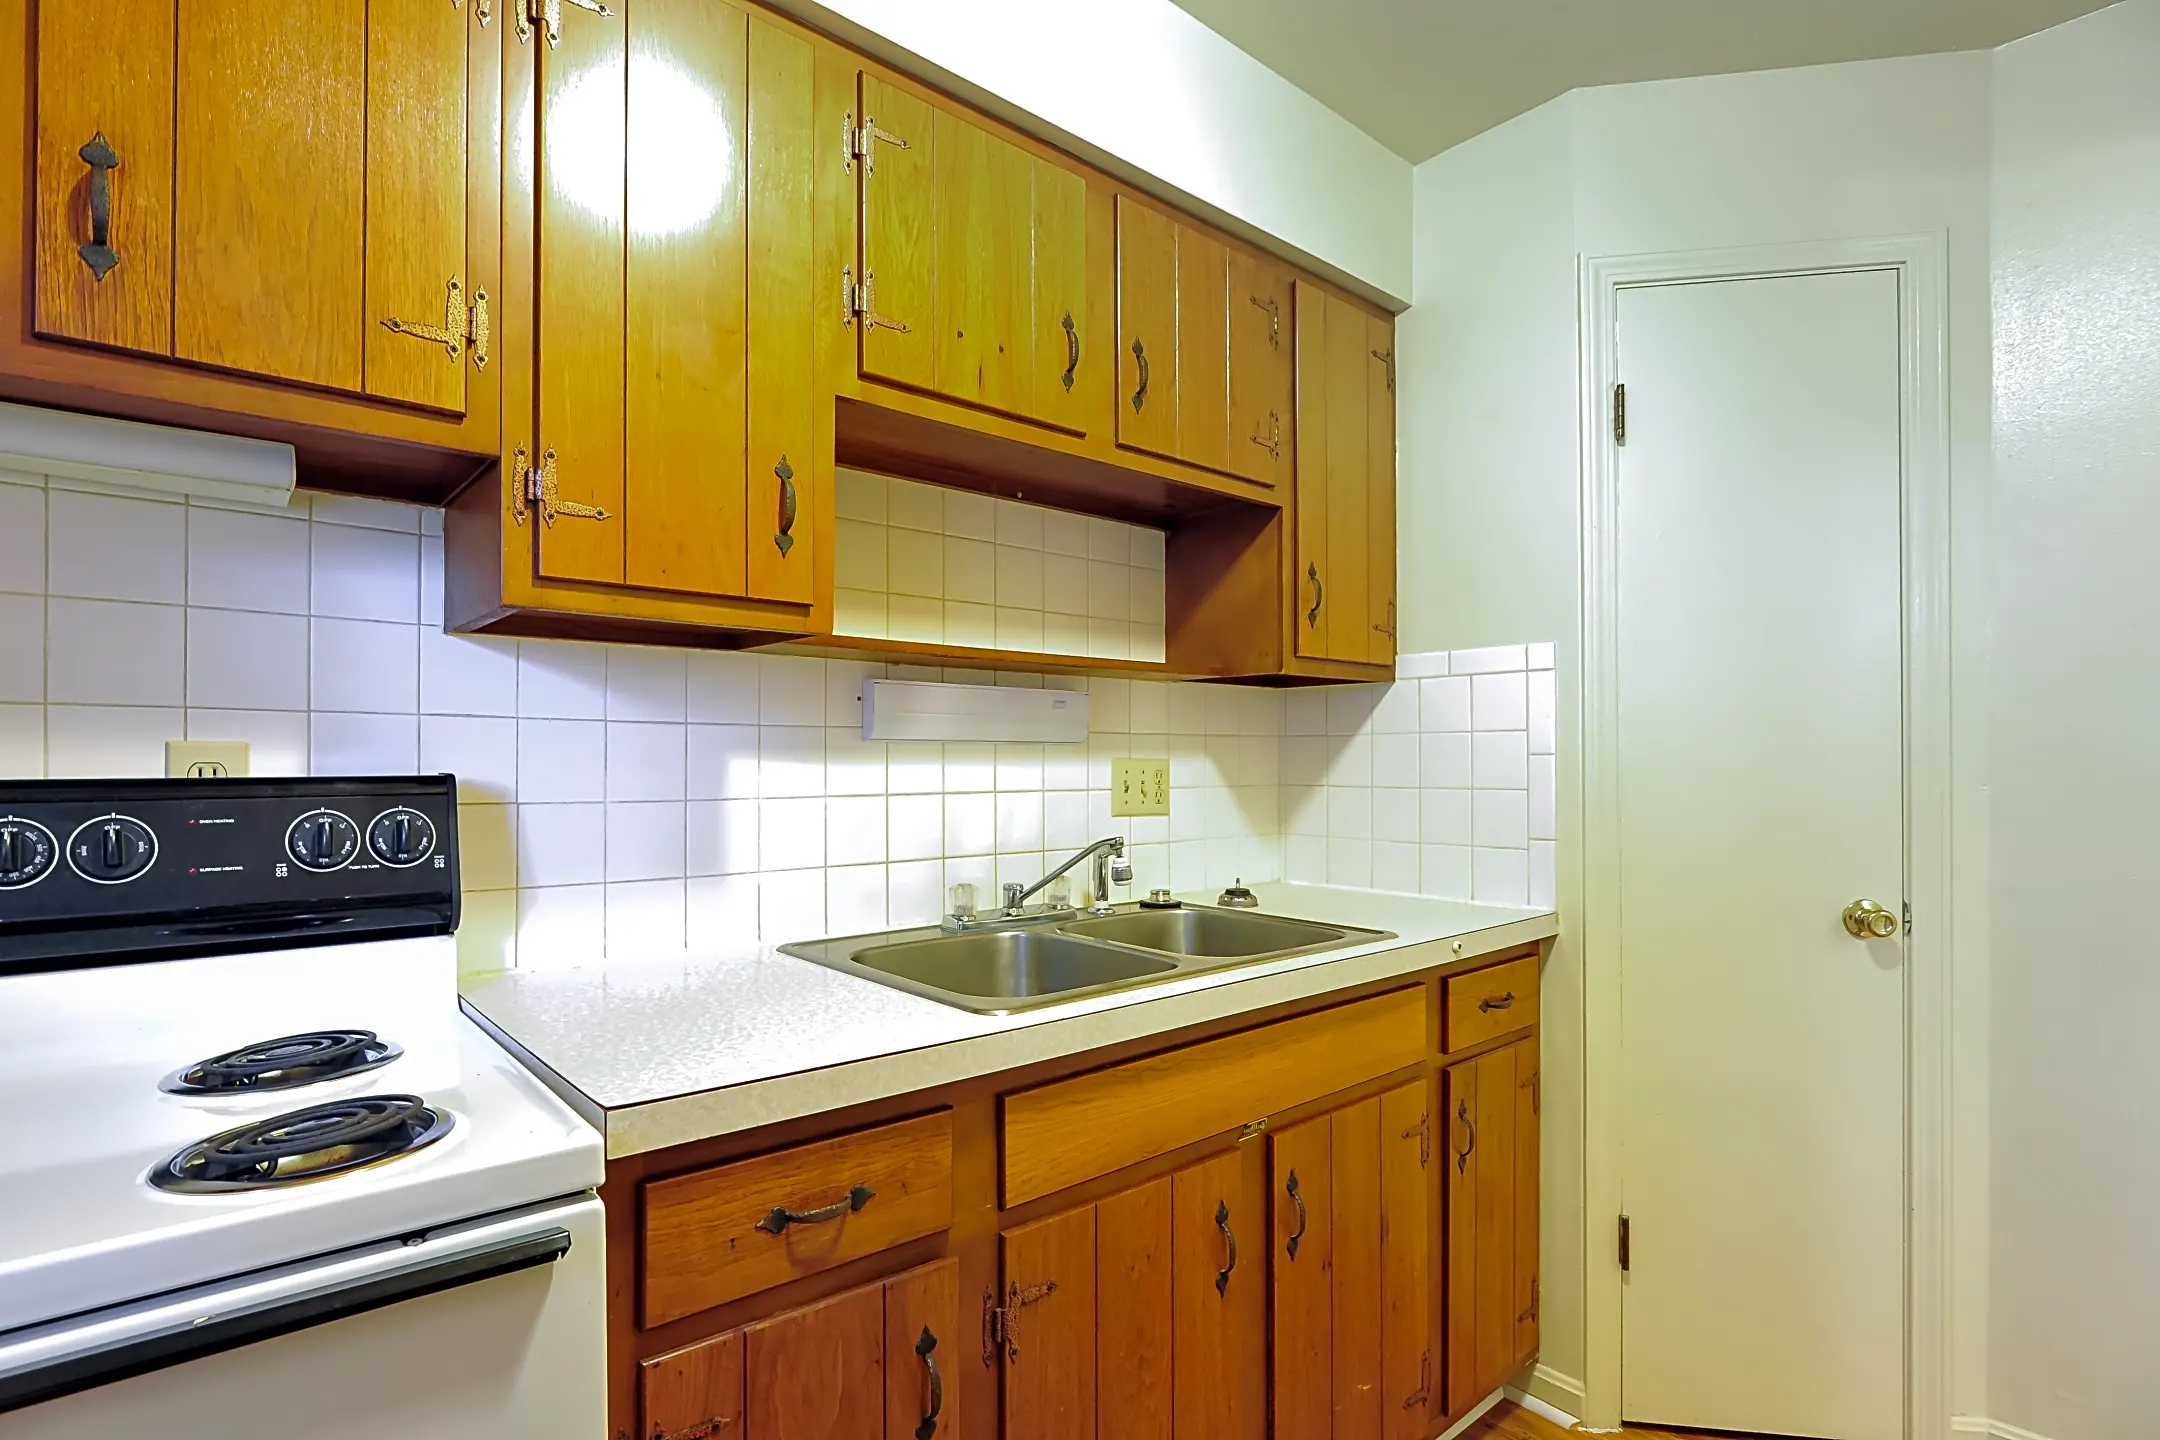 Kitchen - Apartment Village - Evansville, IN